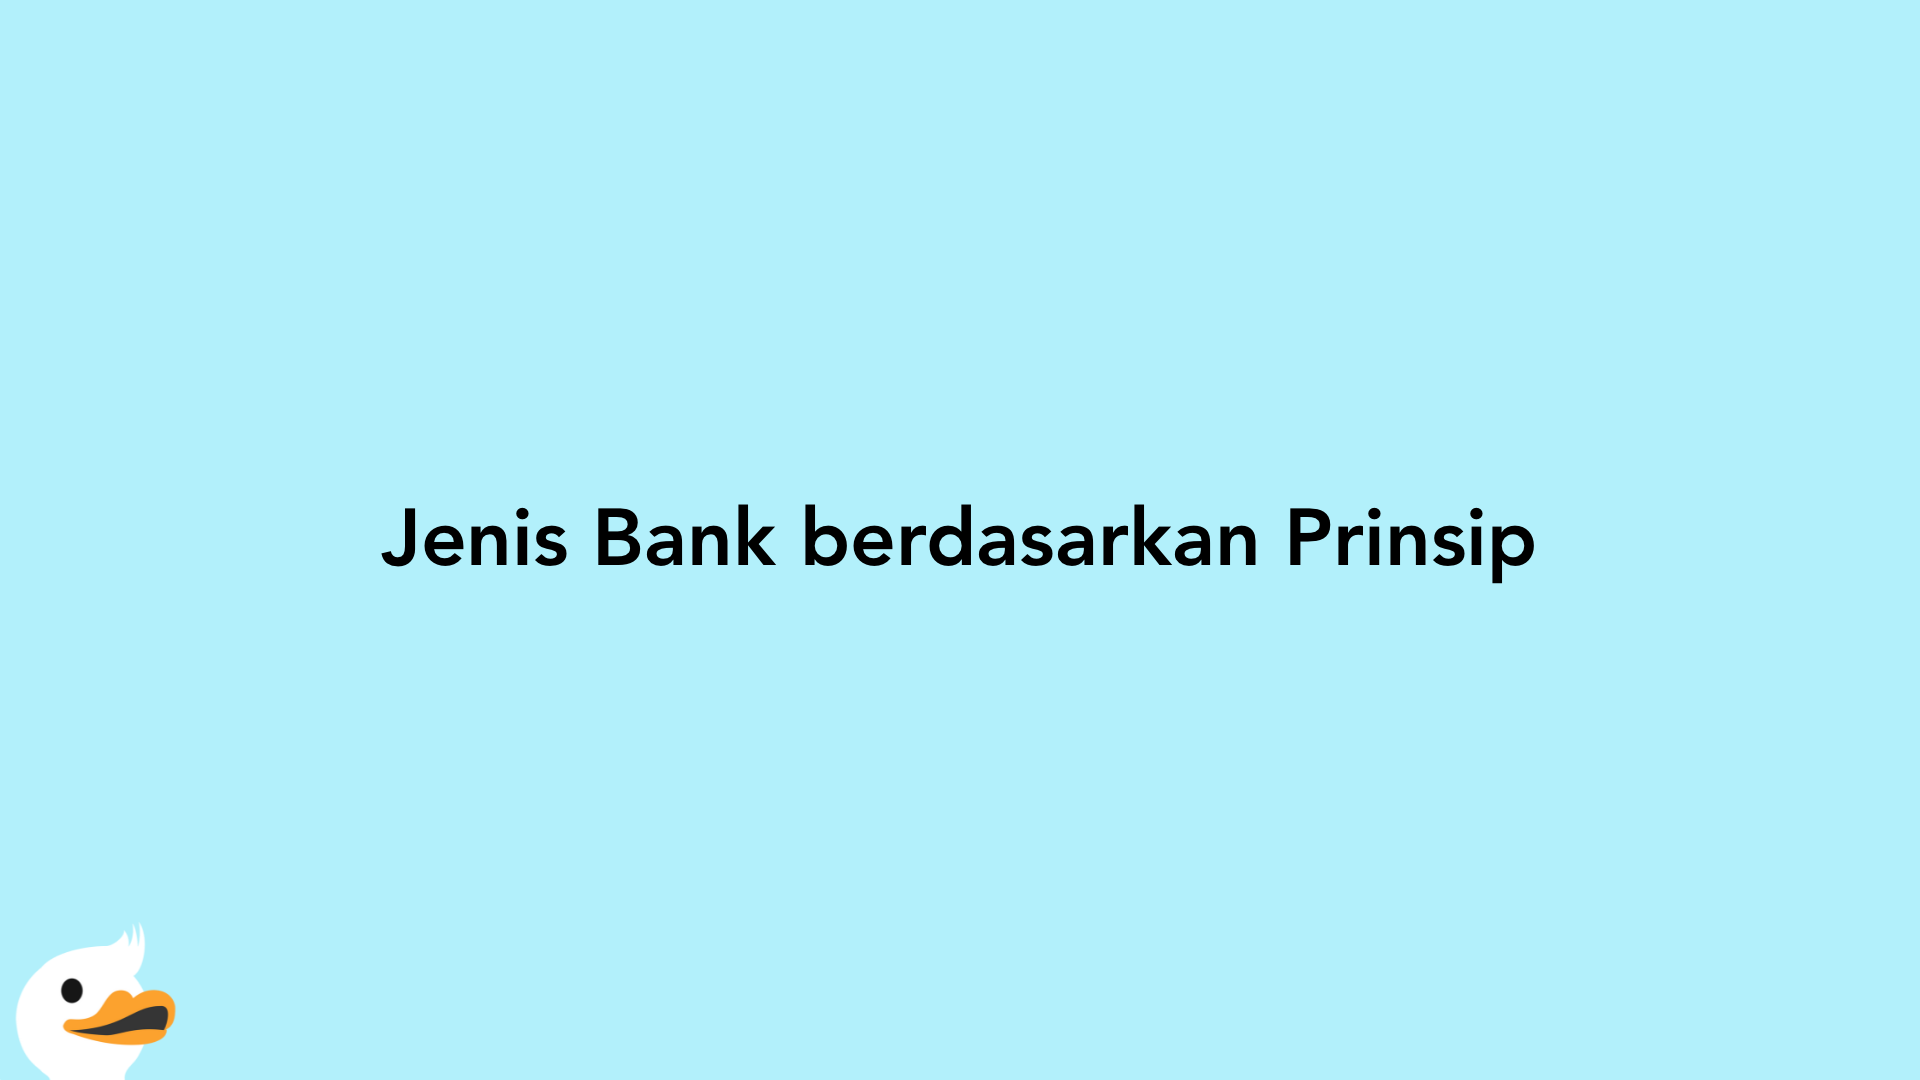 Jenis Bank berdasarkan Prinsip